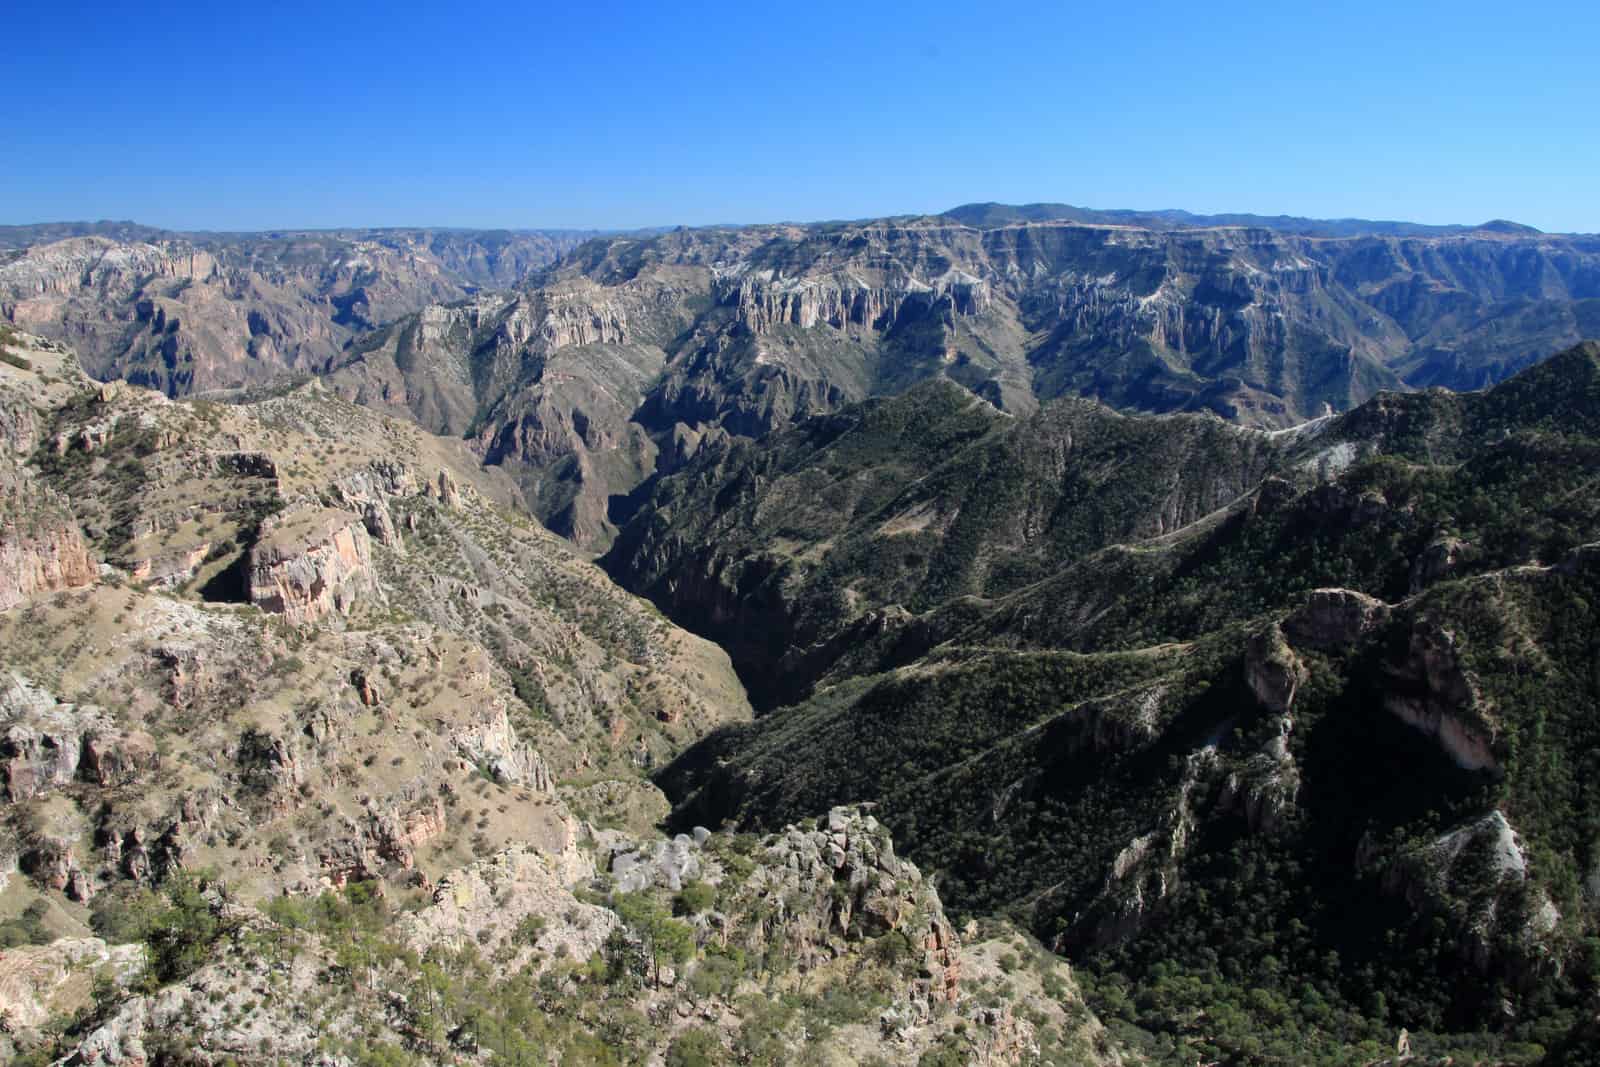 Una vista del cañón desde la cima de una montaña. Ideas de Negocios Rentables en Chihuahua